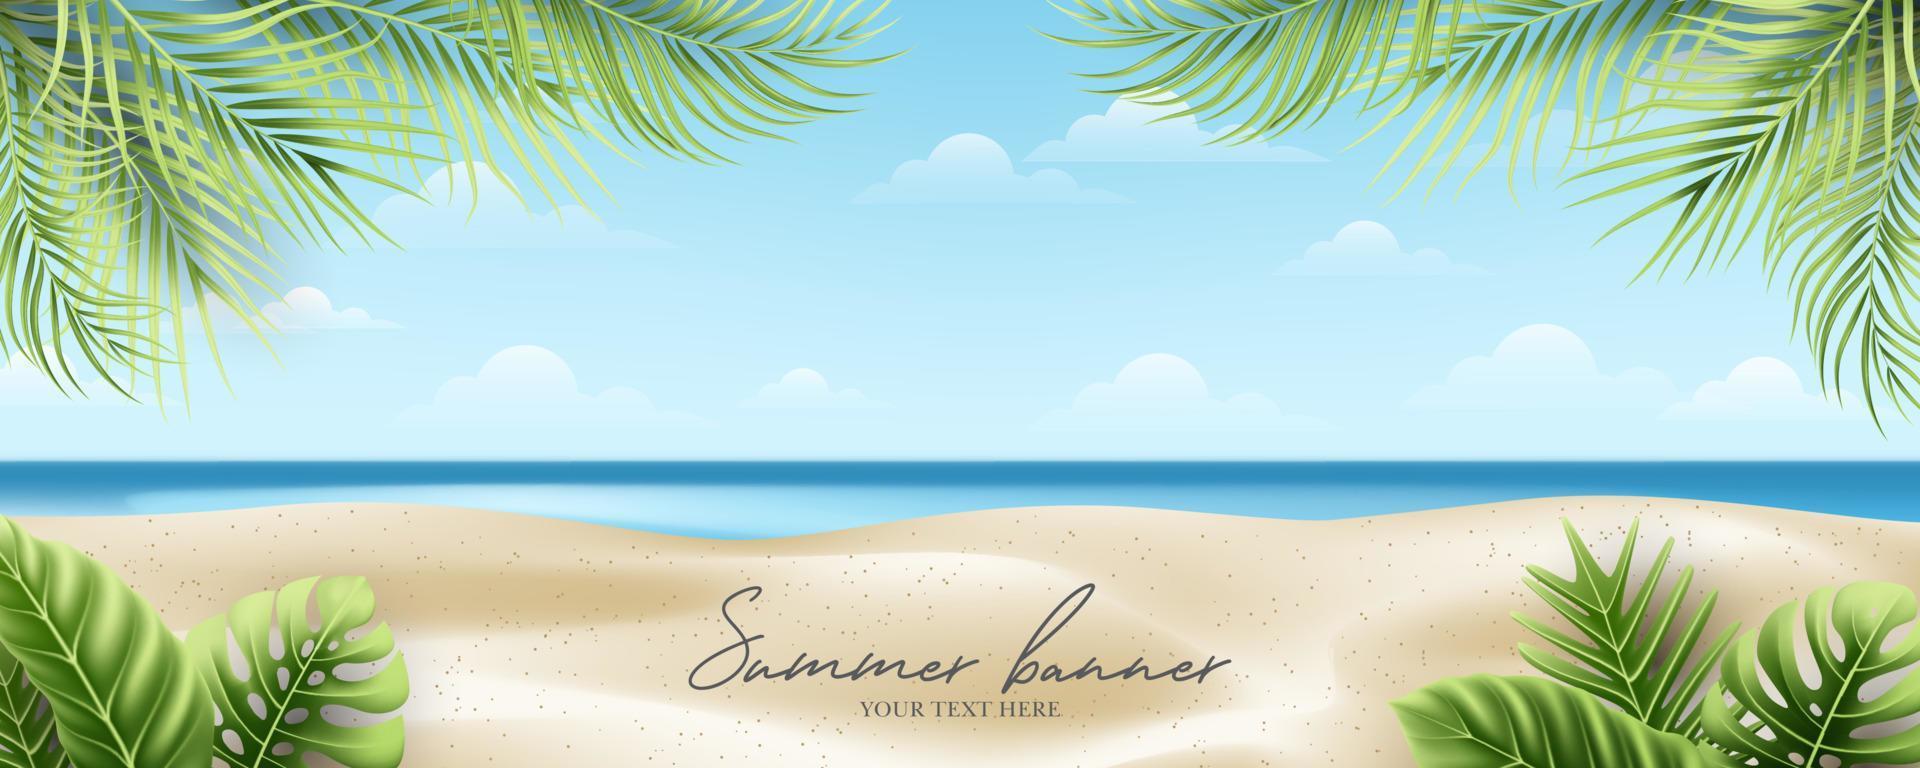 sommar och semester banner koncept på vacker tropisk strand och lövverk bakgrund vektor